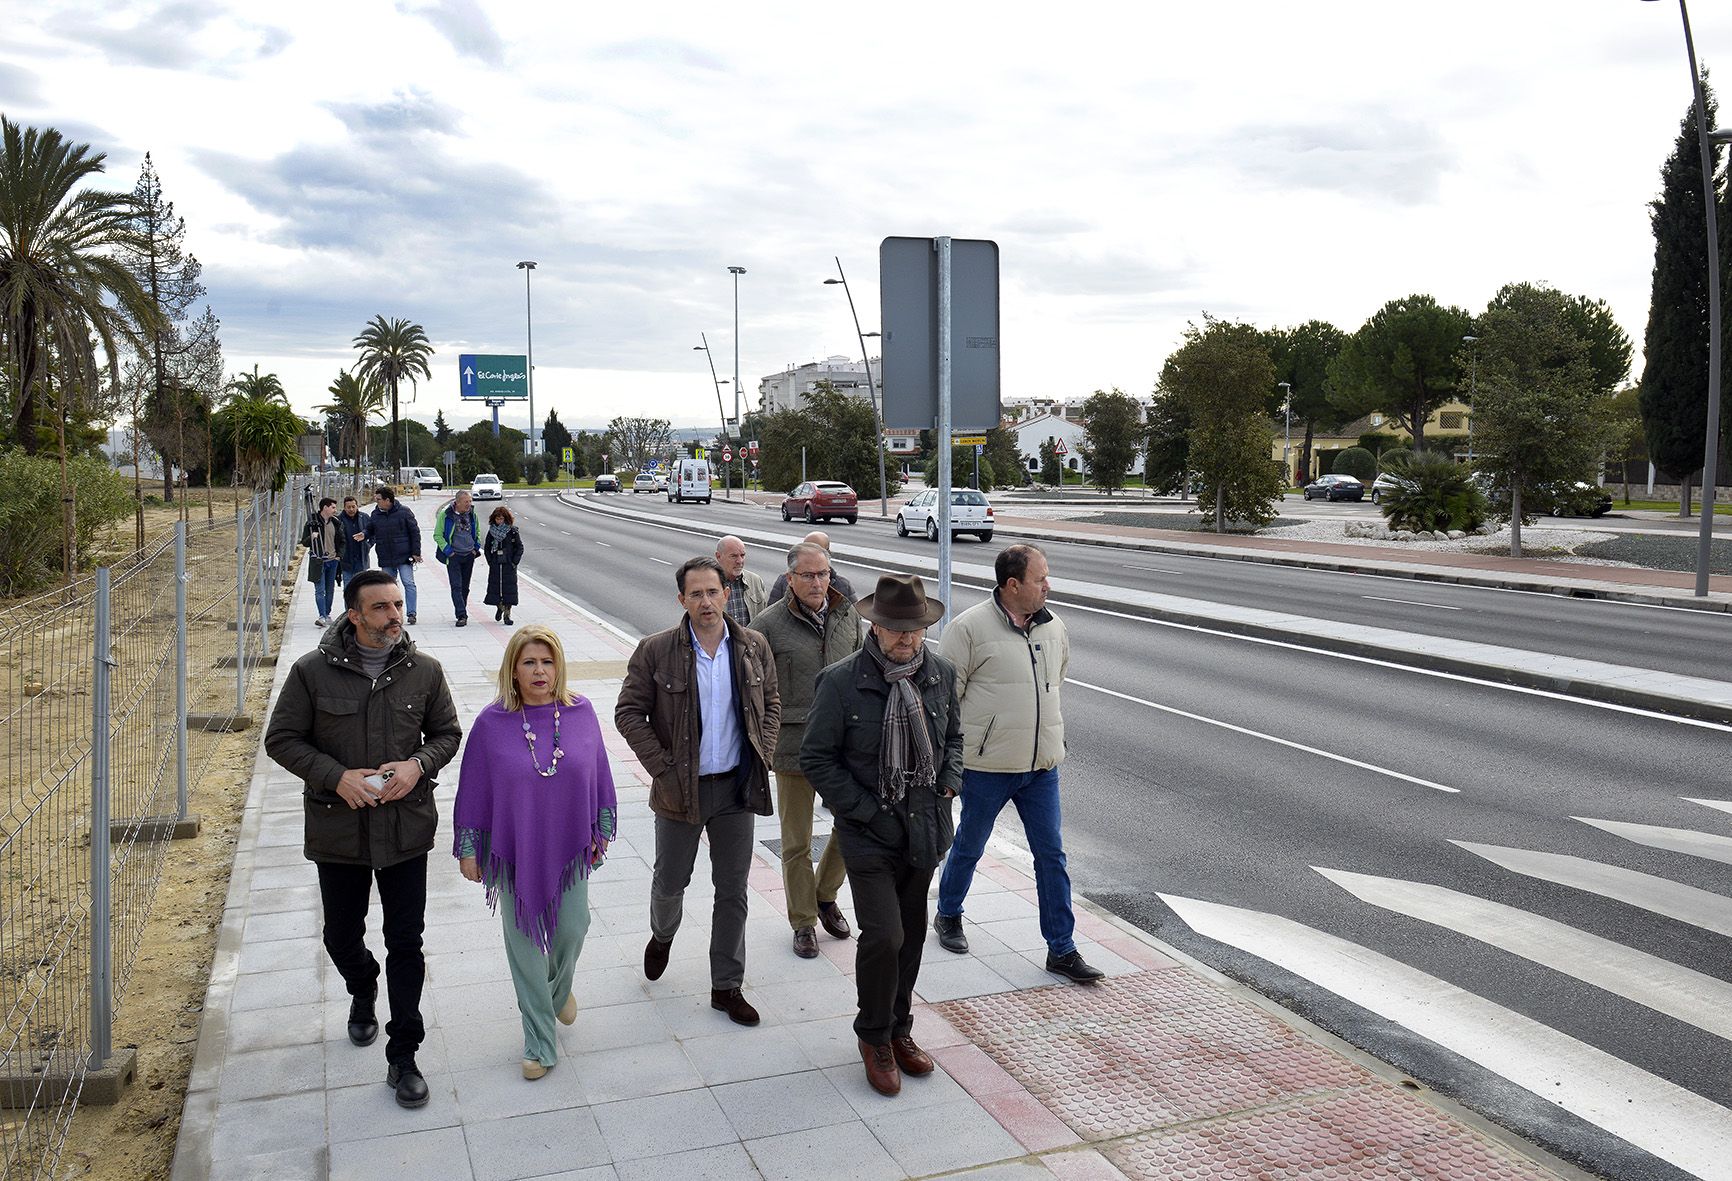 Un momento de la visita al desdoble de Croft, cuyo desarrollo urbanístico supondrá una enorme expansión al norte del núcleo urbano de Jerez.